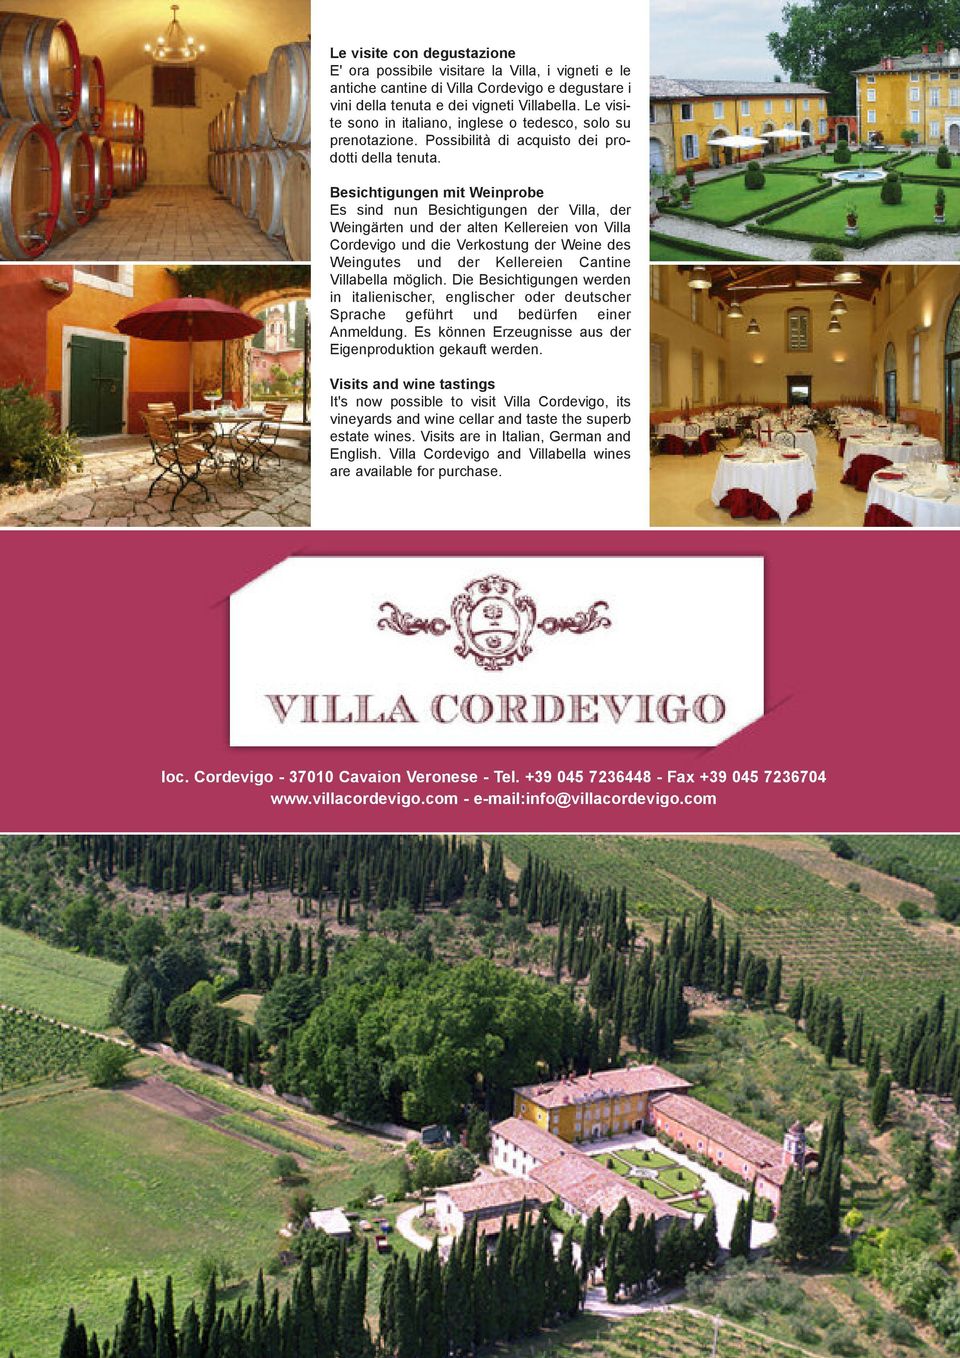 Besichtigungen mit Weinprobe Es sind nun Besichtigungen der Villa, der Weingärten und der alten Kellereien von Villa Cordevigo und die Verkostung der Weine des Weingutes und der Kellereien Cantine